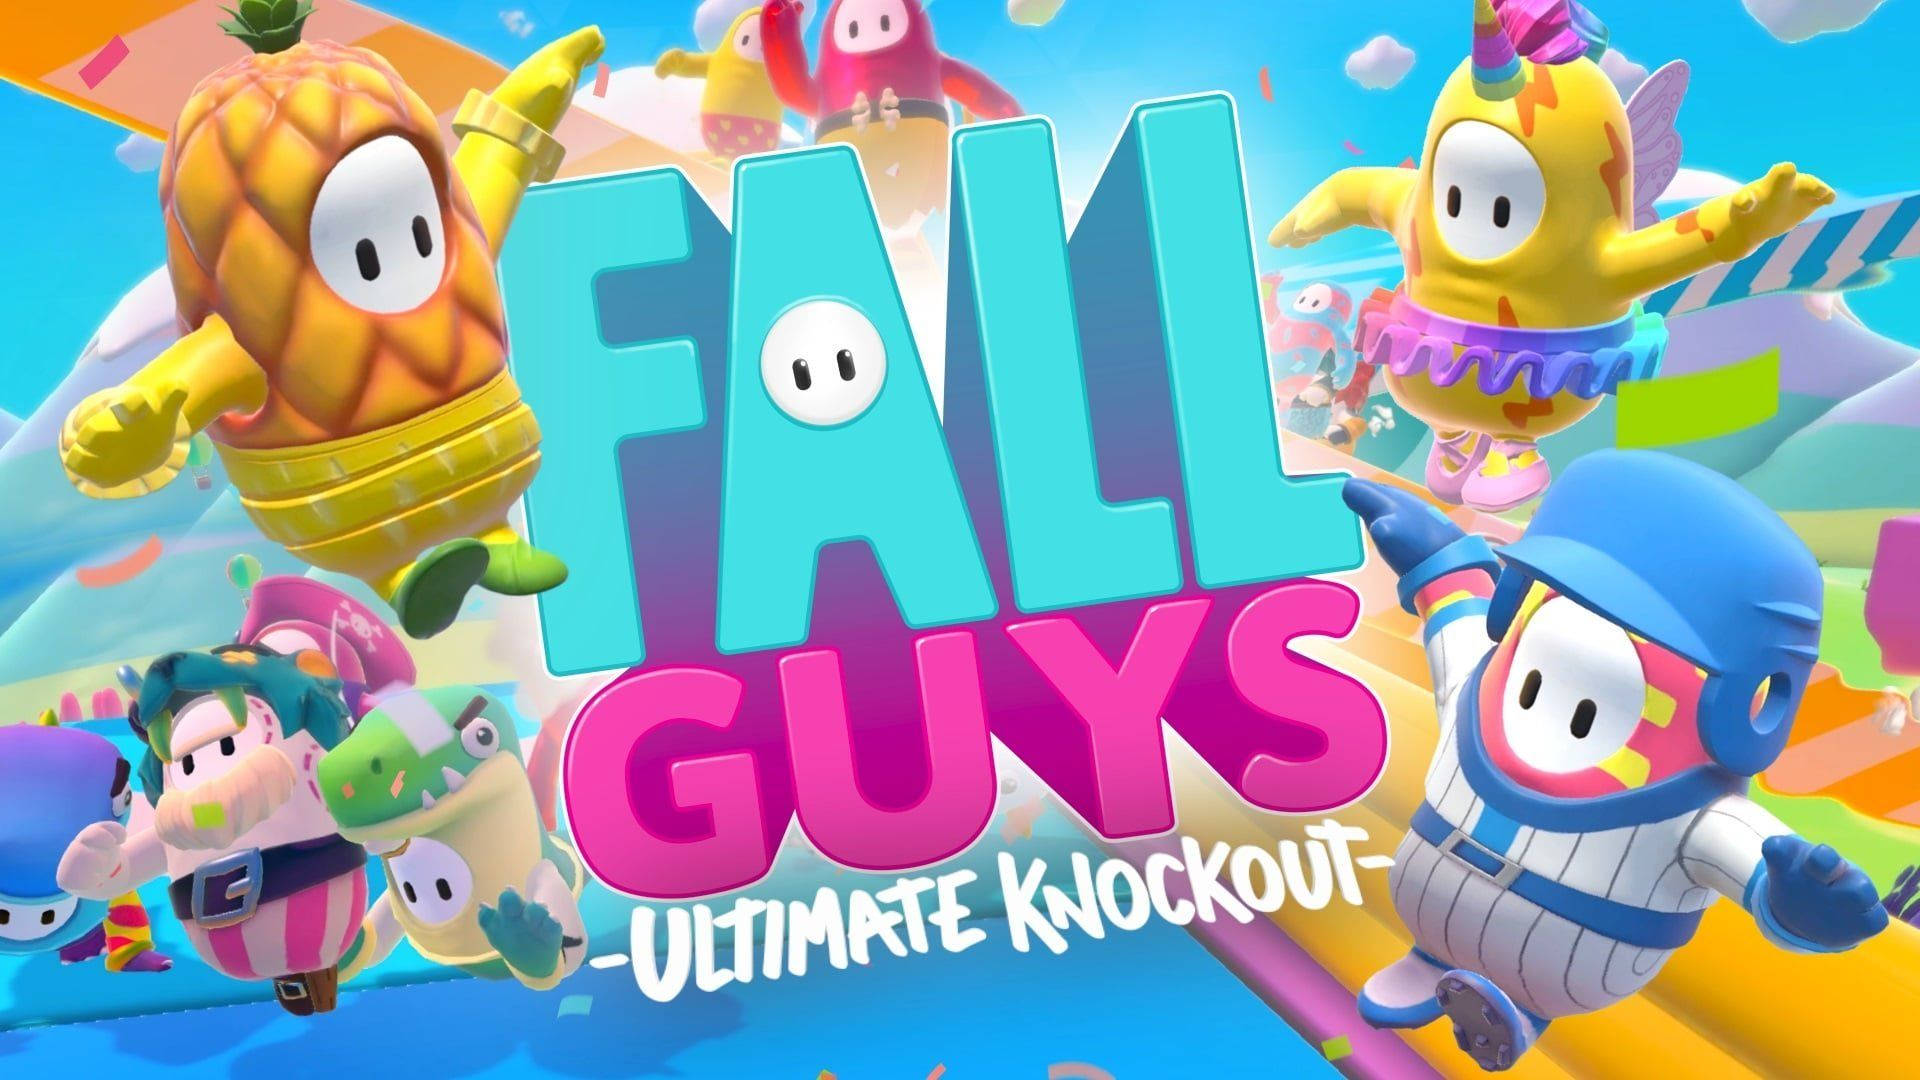 Hãy giúp màn hình của bạn nổi bật hơn với hình nền Fall Guys Ultimate Knockout miễn phí. Với các đồ họa dễ thương và màu sắc tươi sáng, hình nền này chắc chắn sẽ khiến bạn cười thích thú cả ngày. Hãy click để tải về ngay!